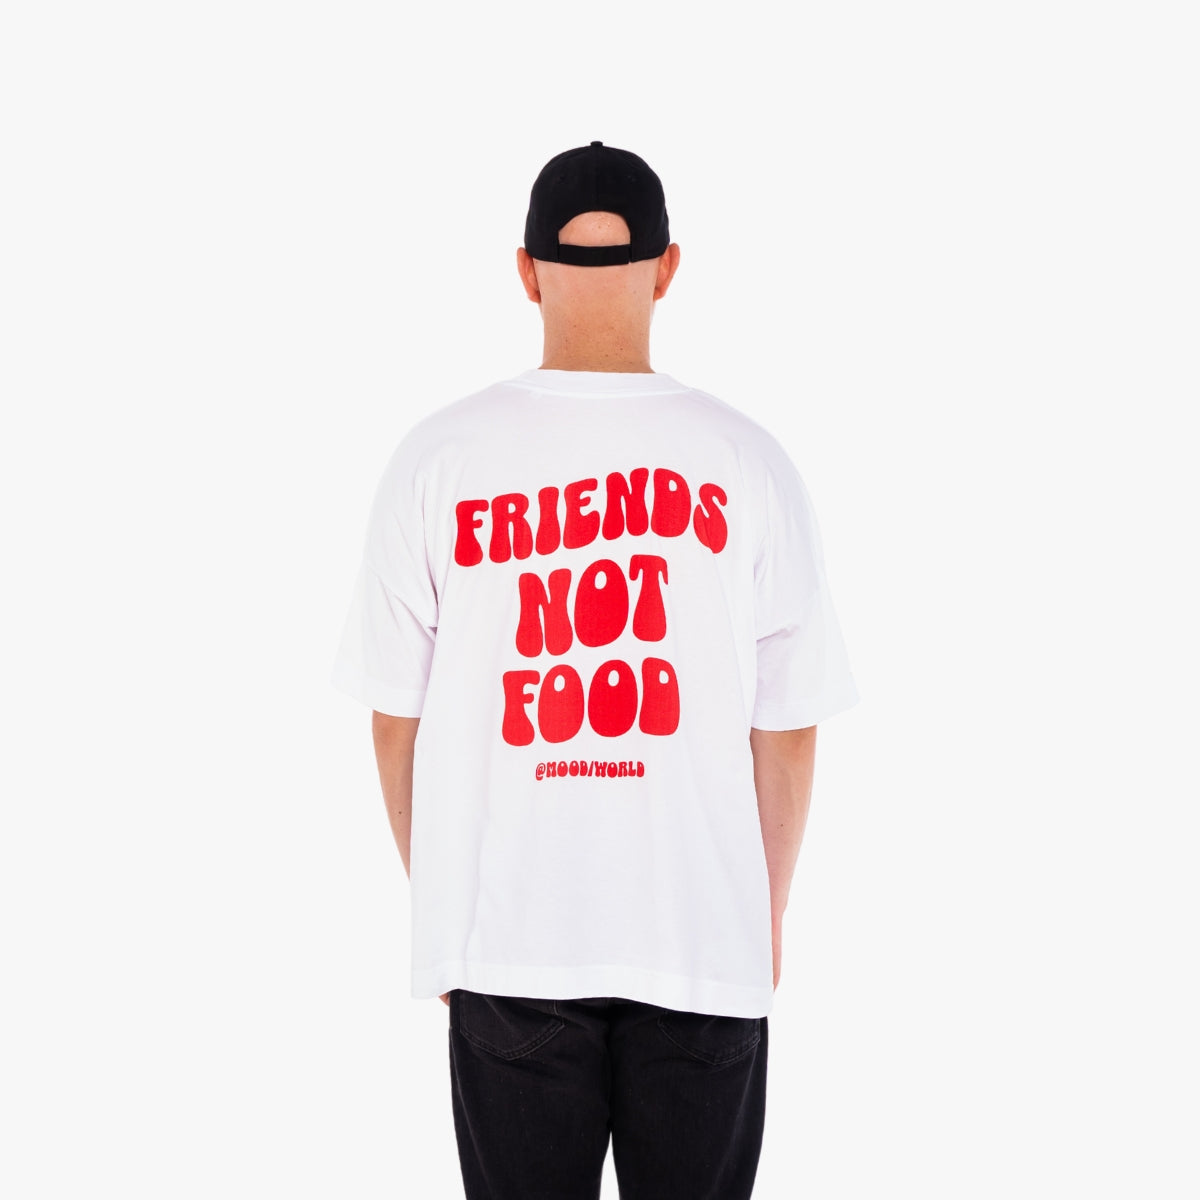 'FRIENDS NOT FOOD Wave' Organic Oversize Shirt in der Farbe White als Back Nahaufnahme getragen von einem männlichen Model